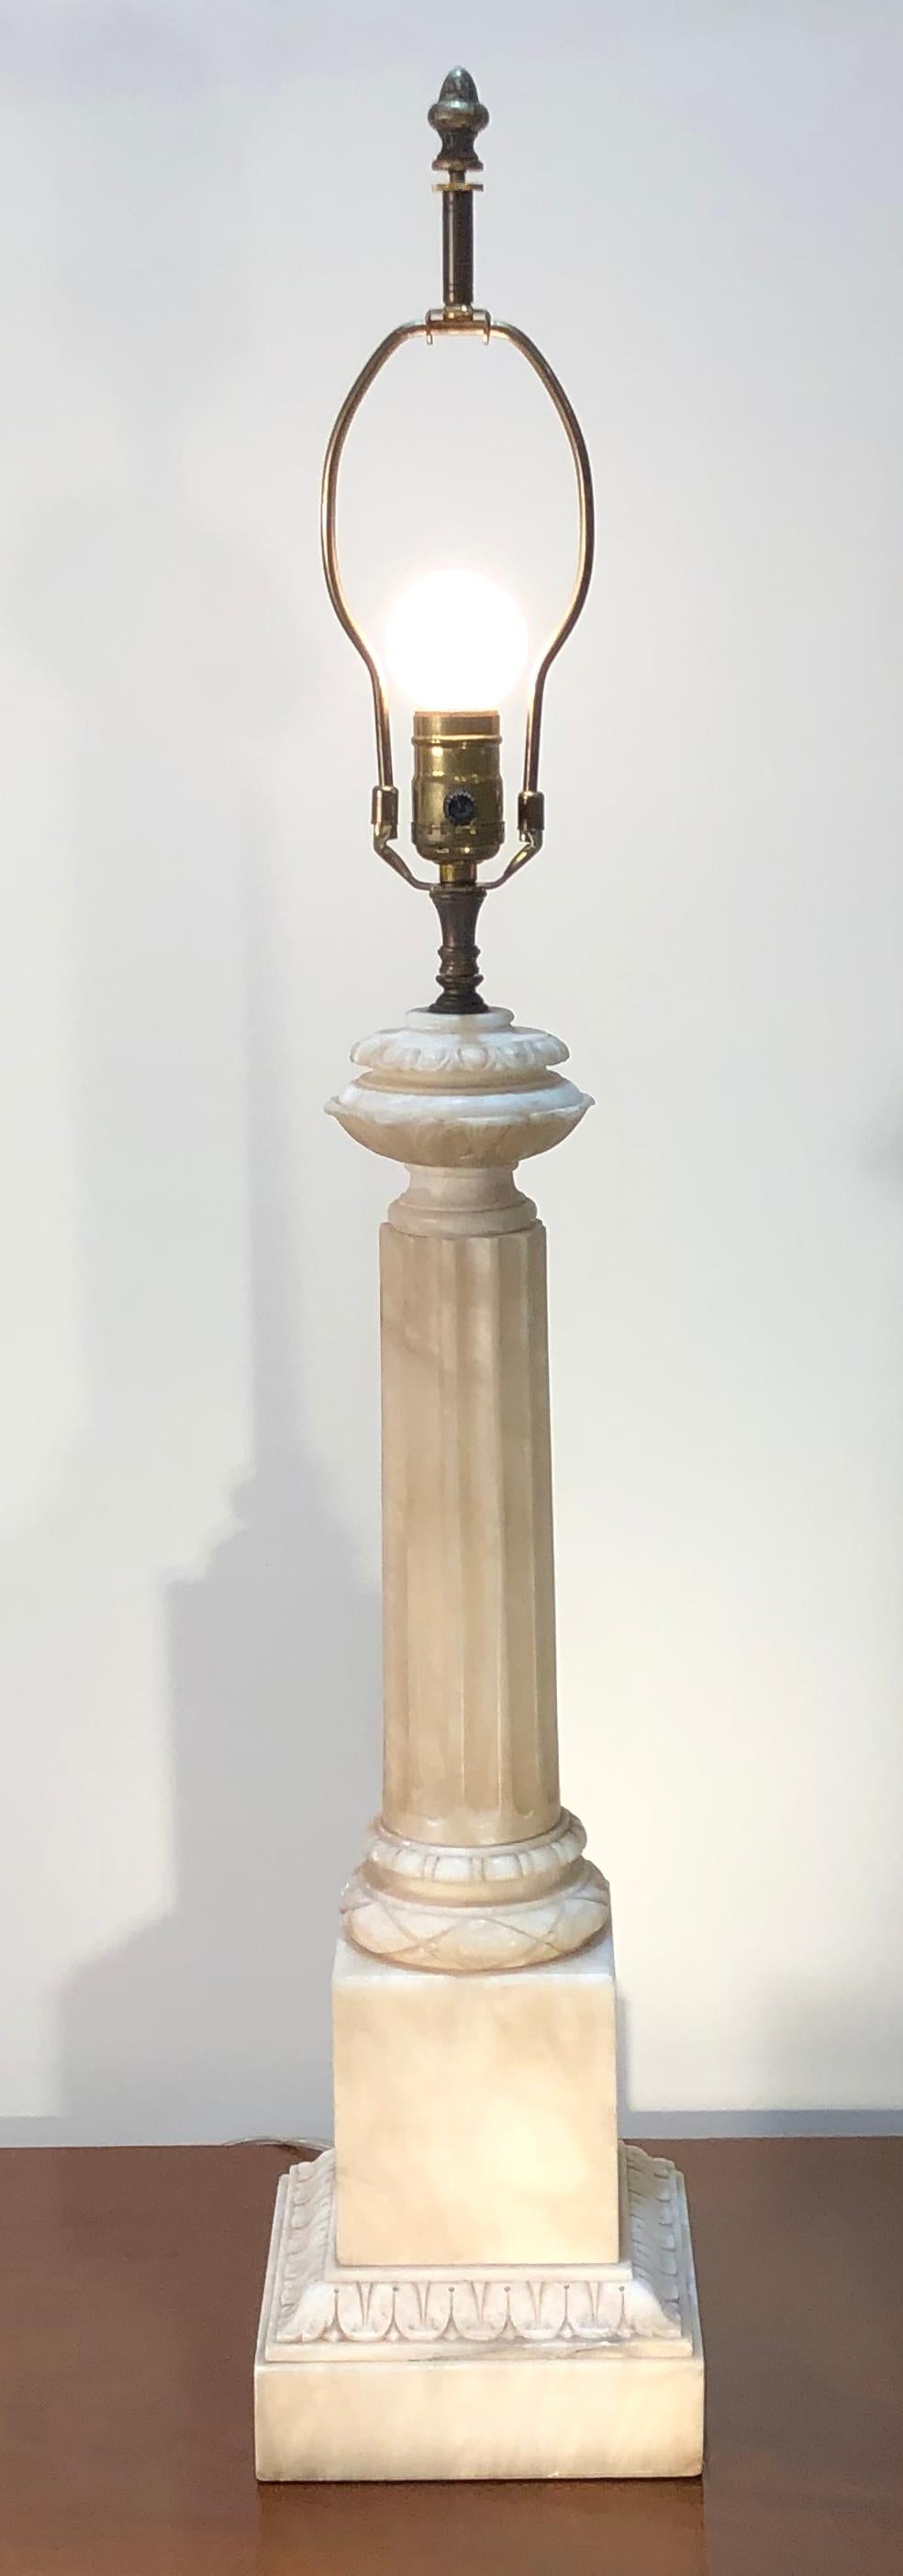 Eine geschnitzte Alabaster-Tischlampe mit einer Säule im klassischen Stil. Vollständig restauriert mit Verkabelung und einer UL-gelisteten Steckdose.